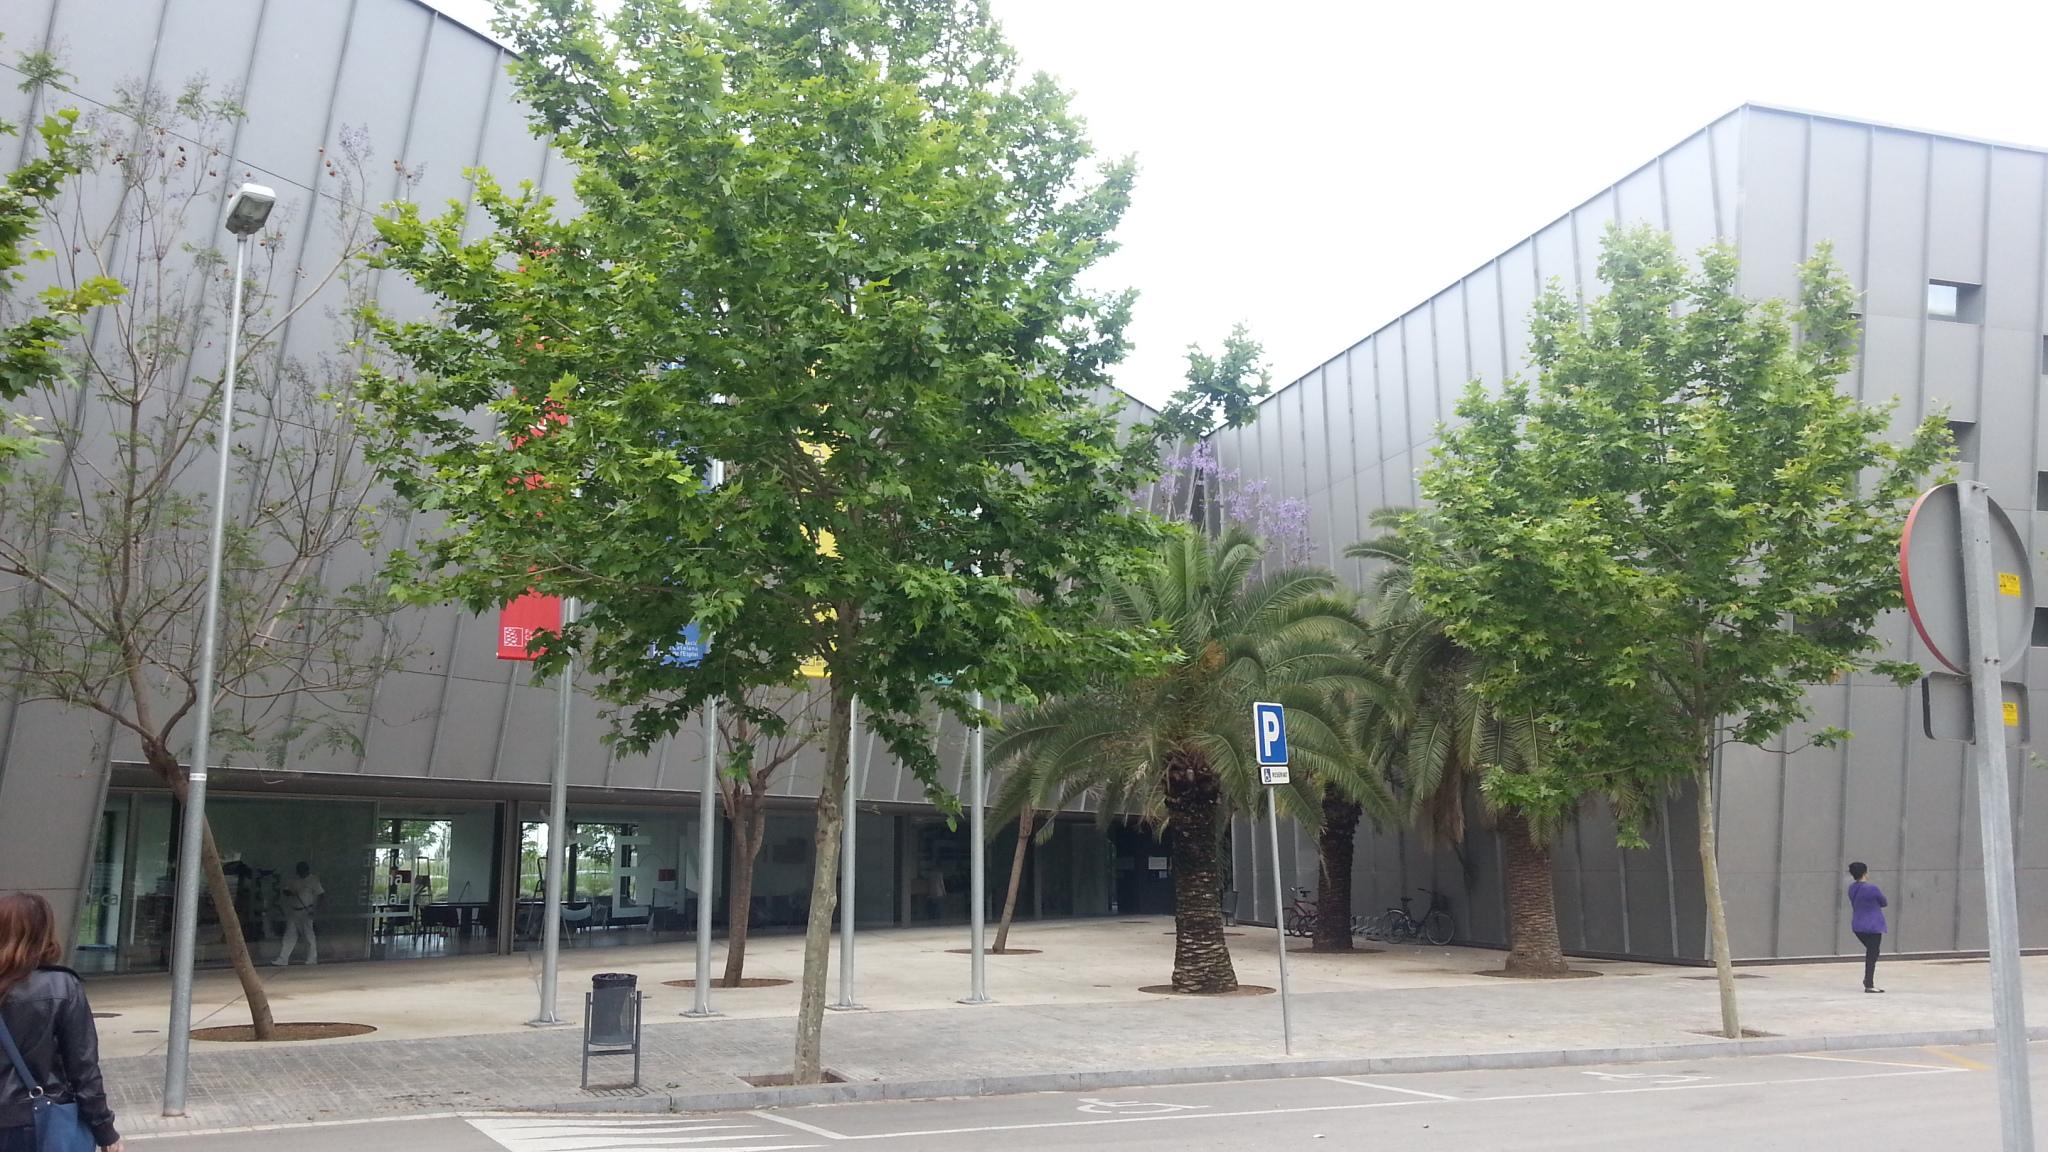 Centre Esplai Albergue El Prat de Llobregat Buitenkant foto